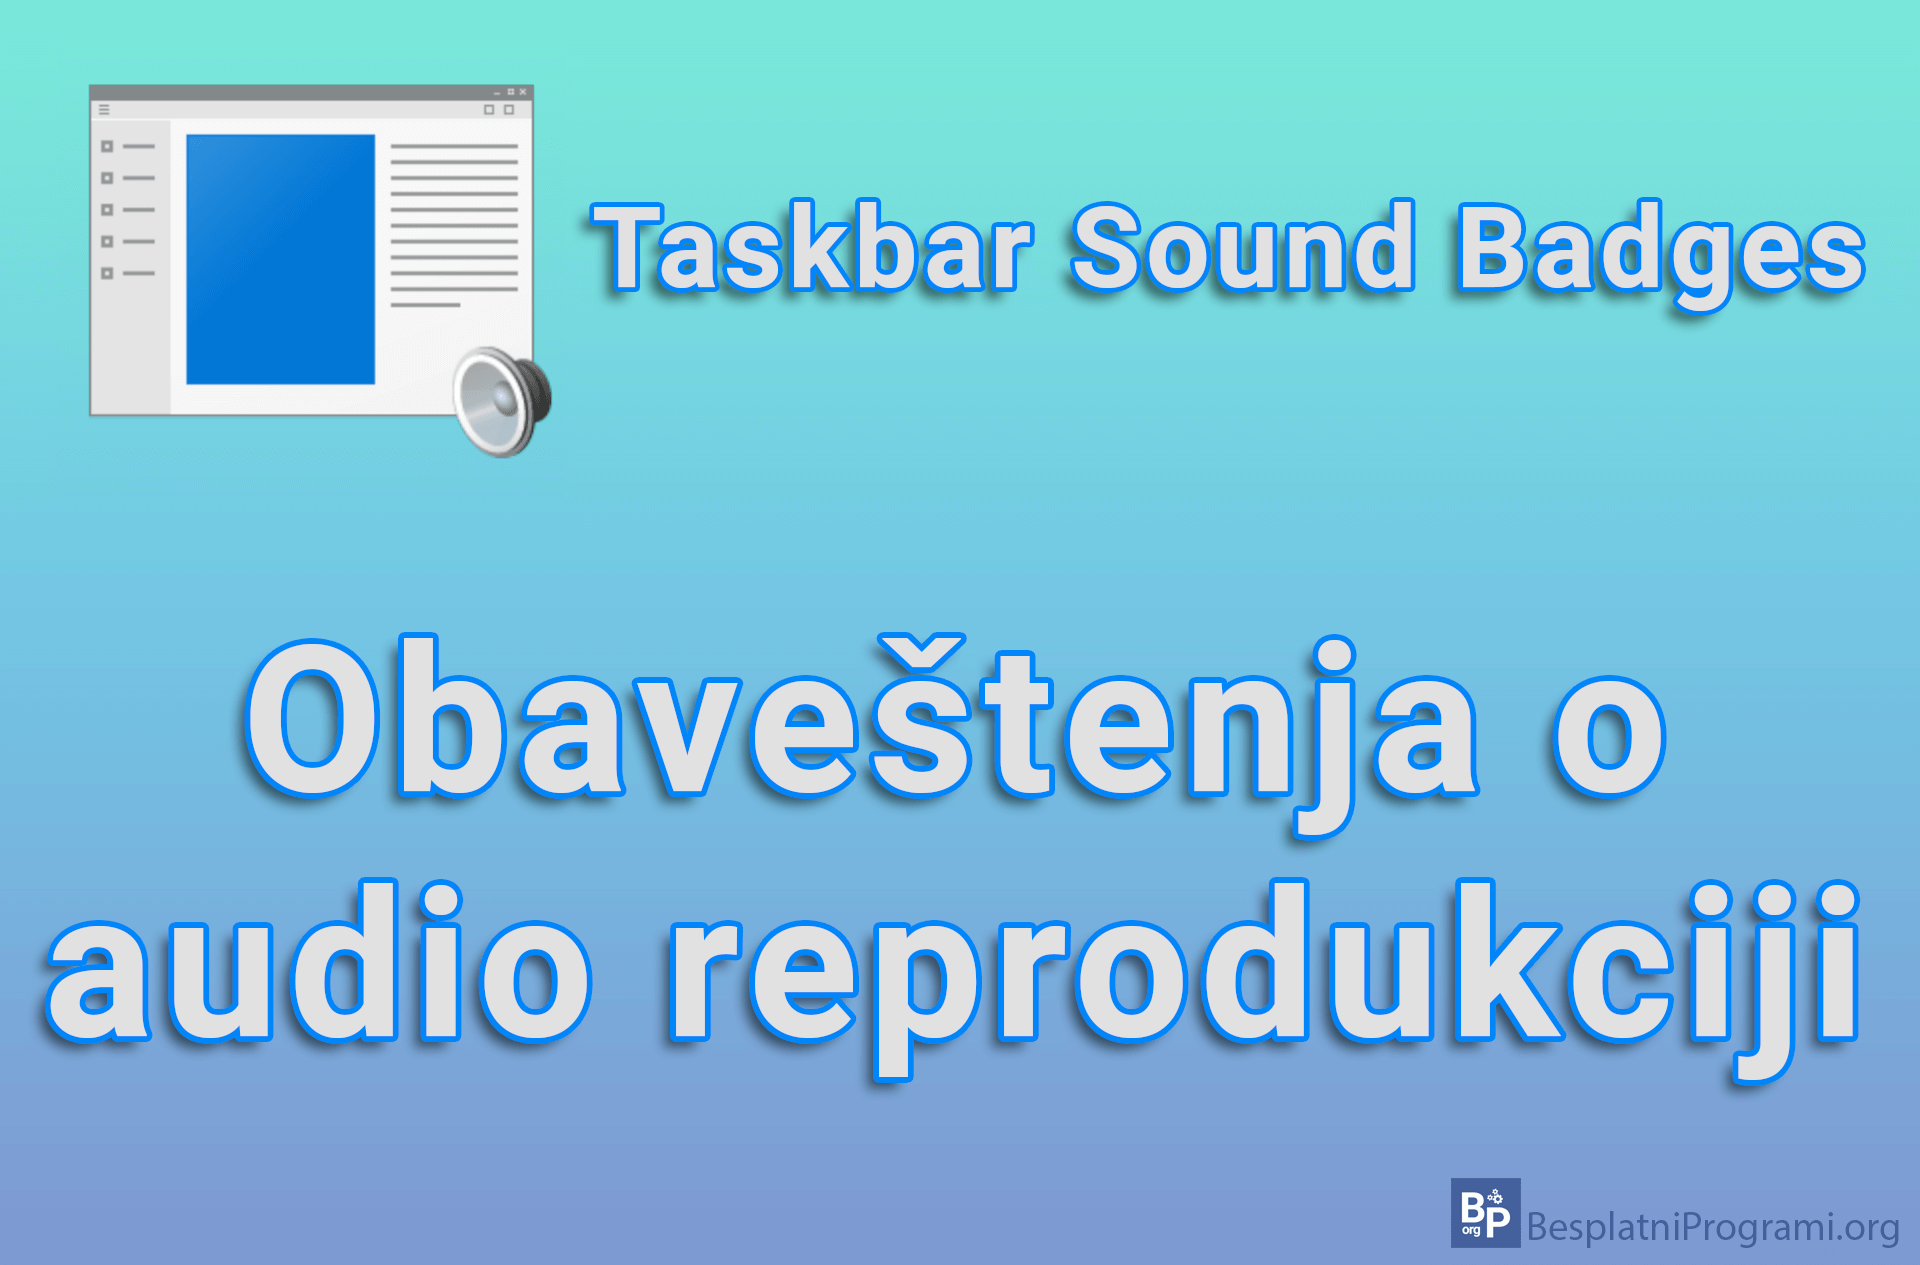 Taskbar Sound Badges – Obaveštenja o audio reprodukciji